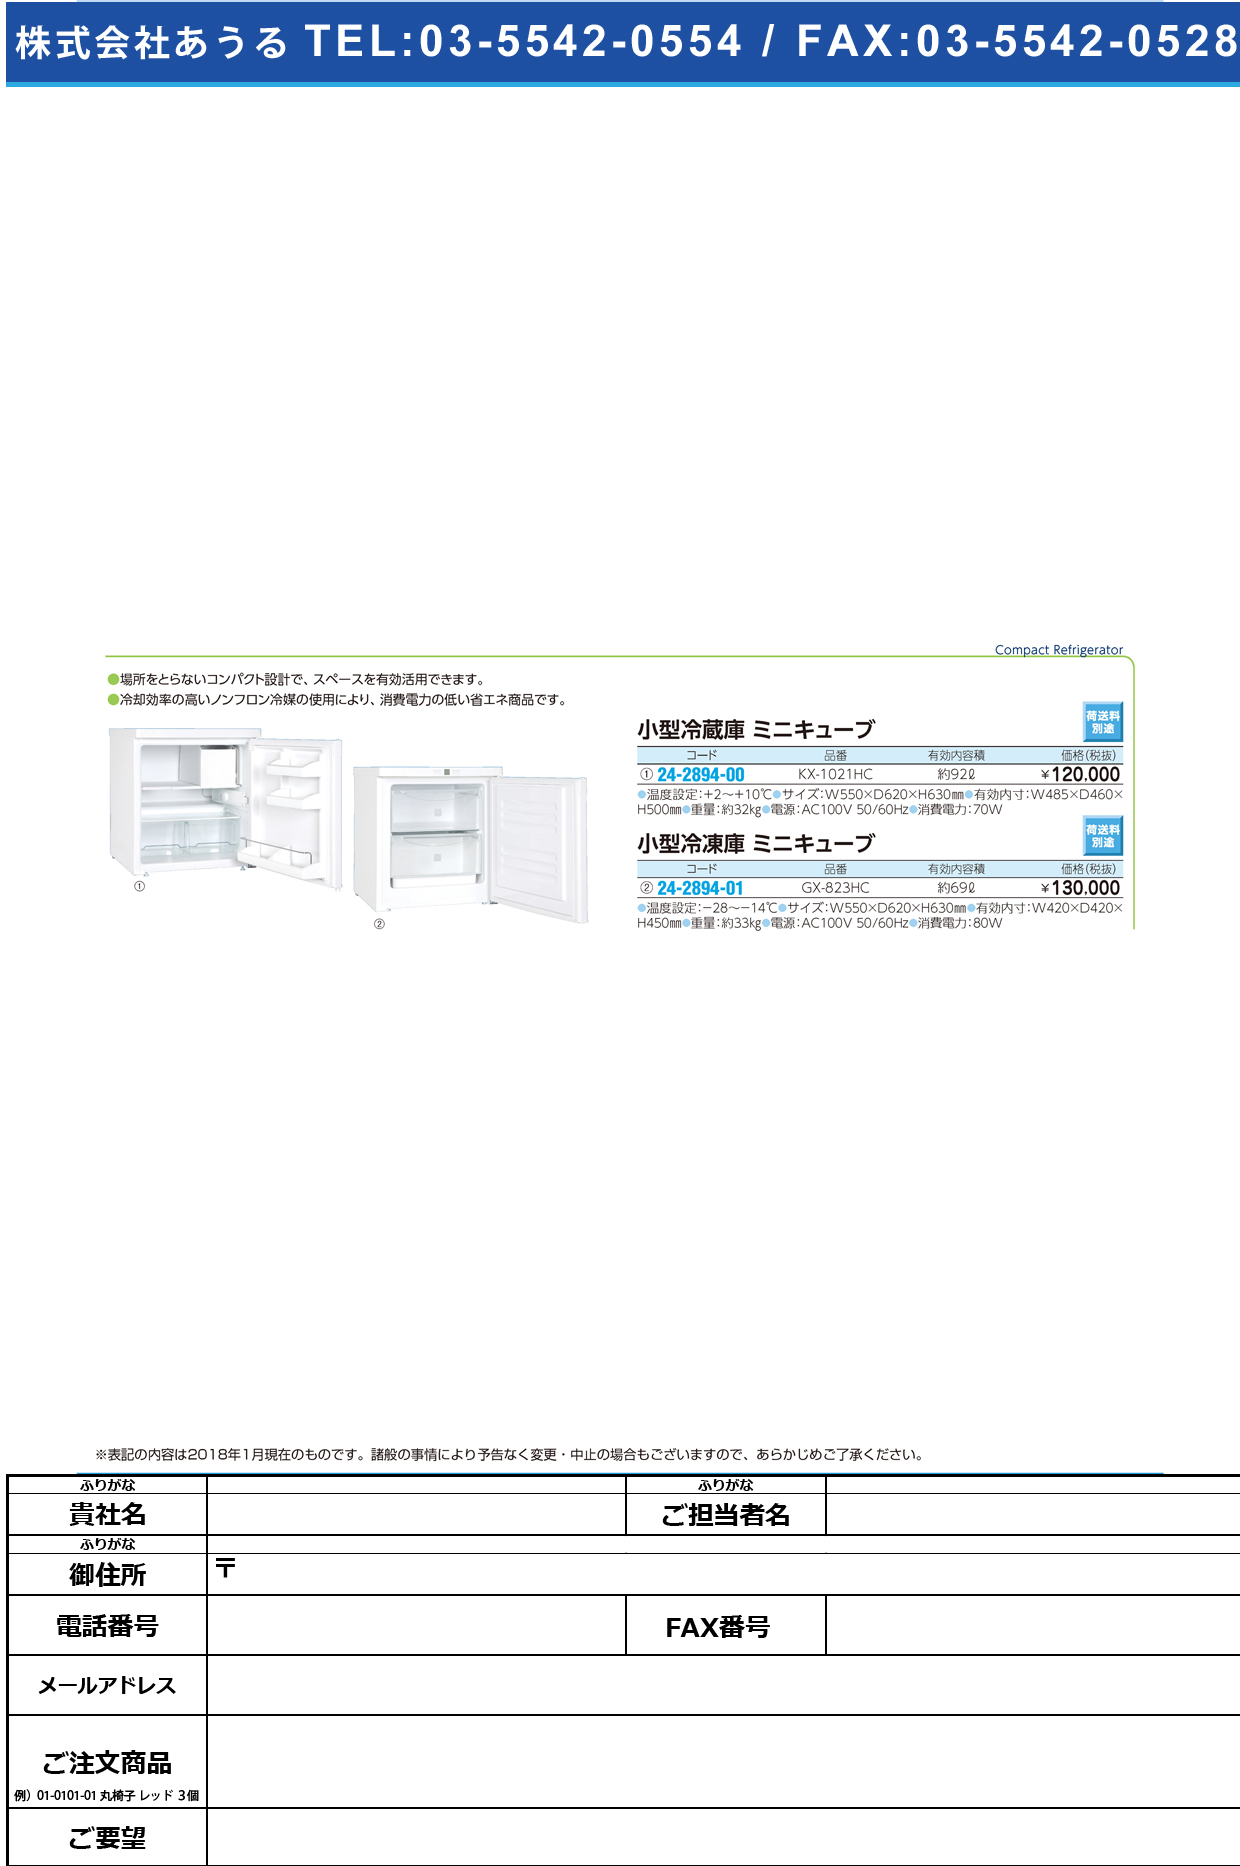 (24-2894-01)小型冷凍庫ミニキューブ GX-823HC(69L) ｺｶﾞﾀﾚｲﾄｳｺﾐﾆｷｭｰﾌﾞ(日本フリーザー)【1台単位】【2019年カタログ商品】